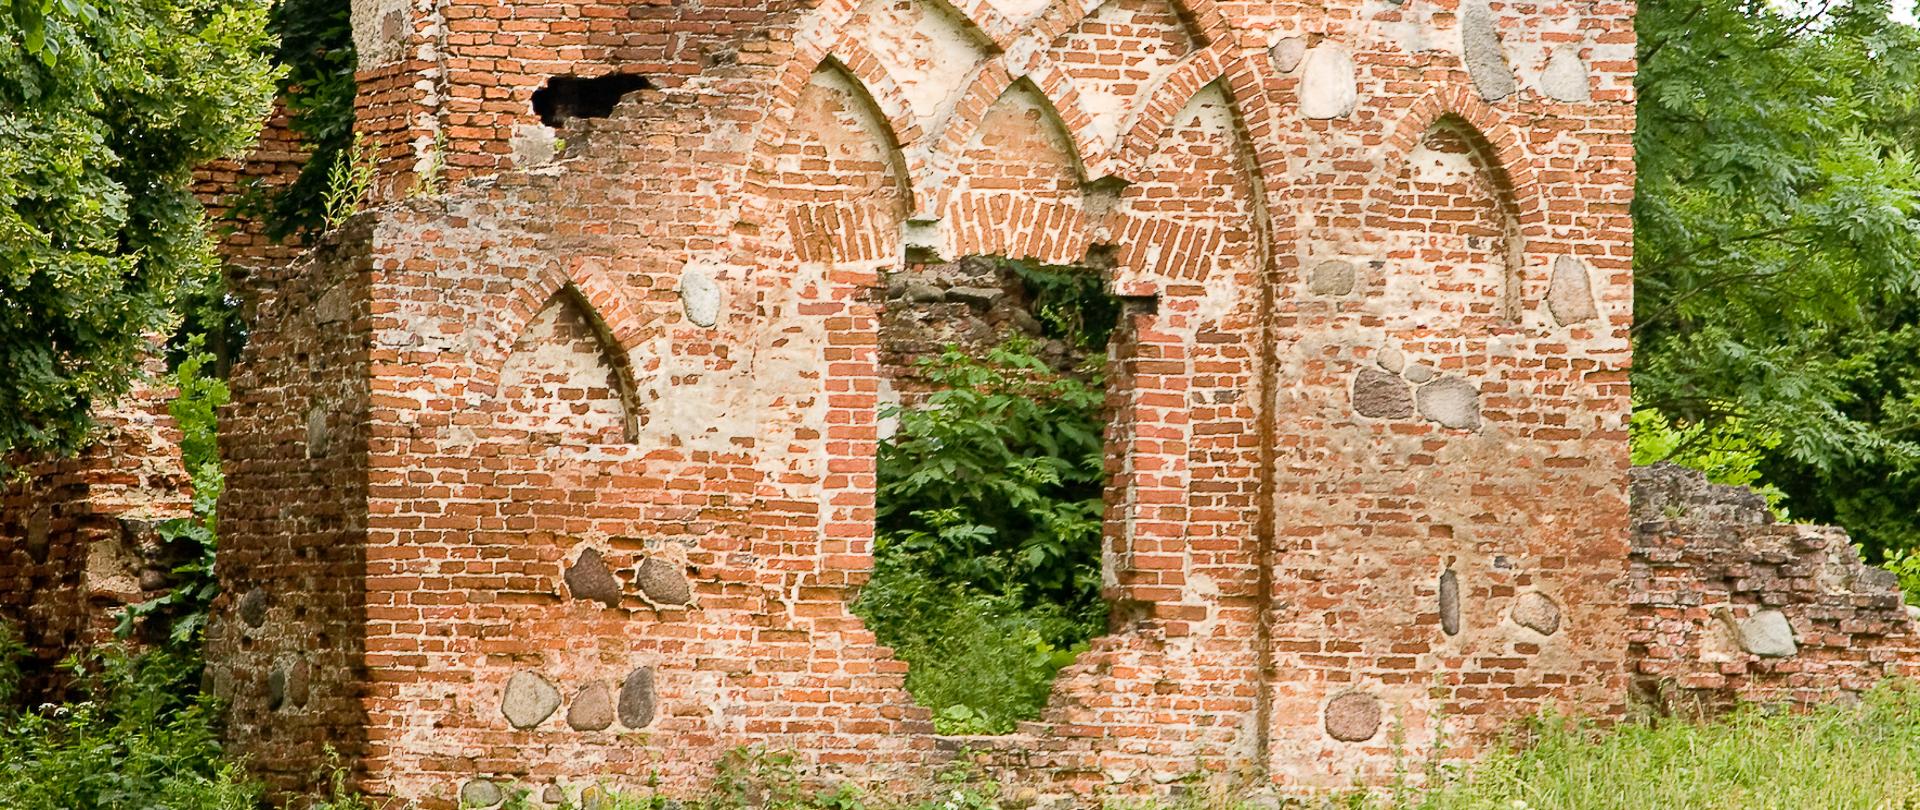 Ruiny_neogotyckiego_zamku_w_Podzamczu